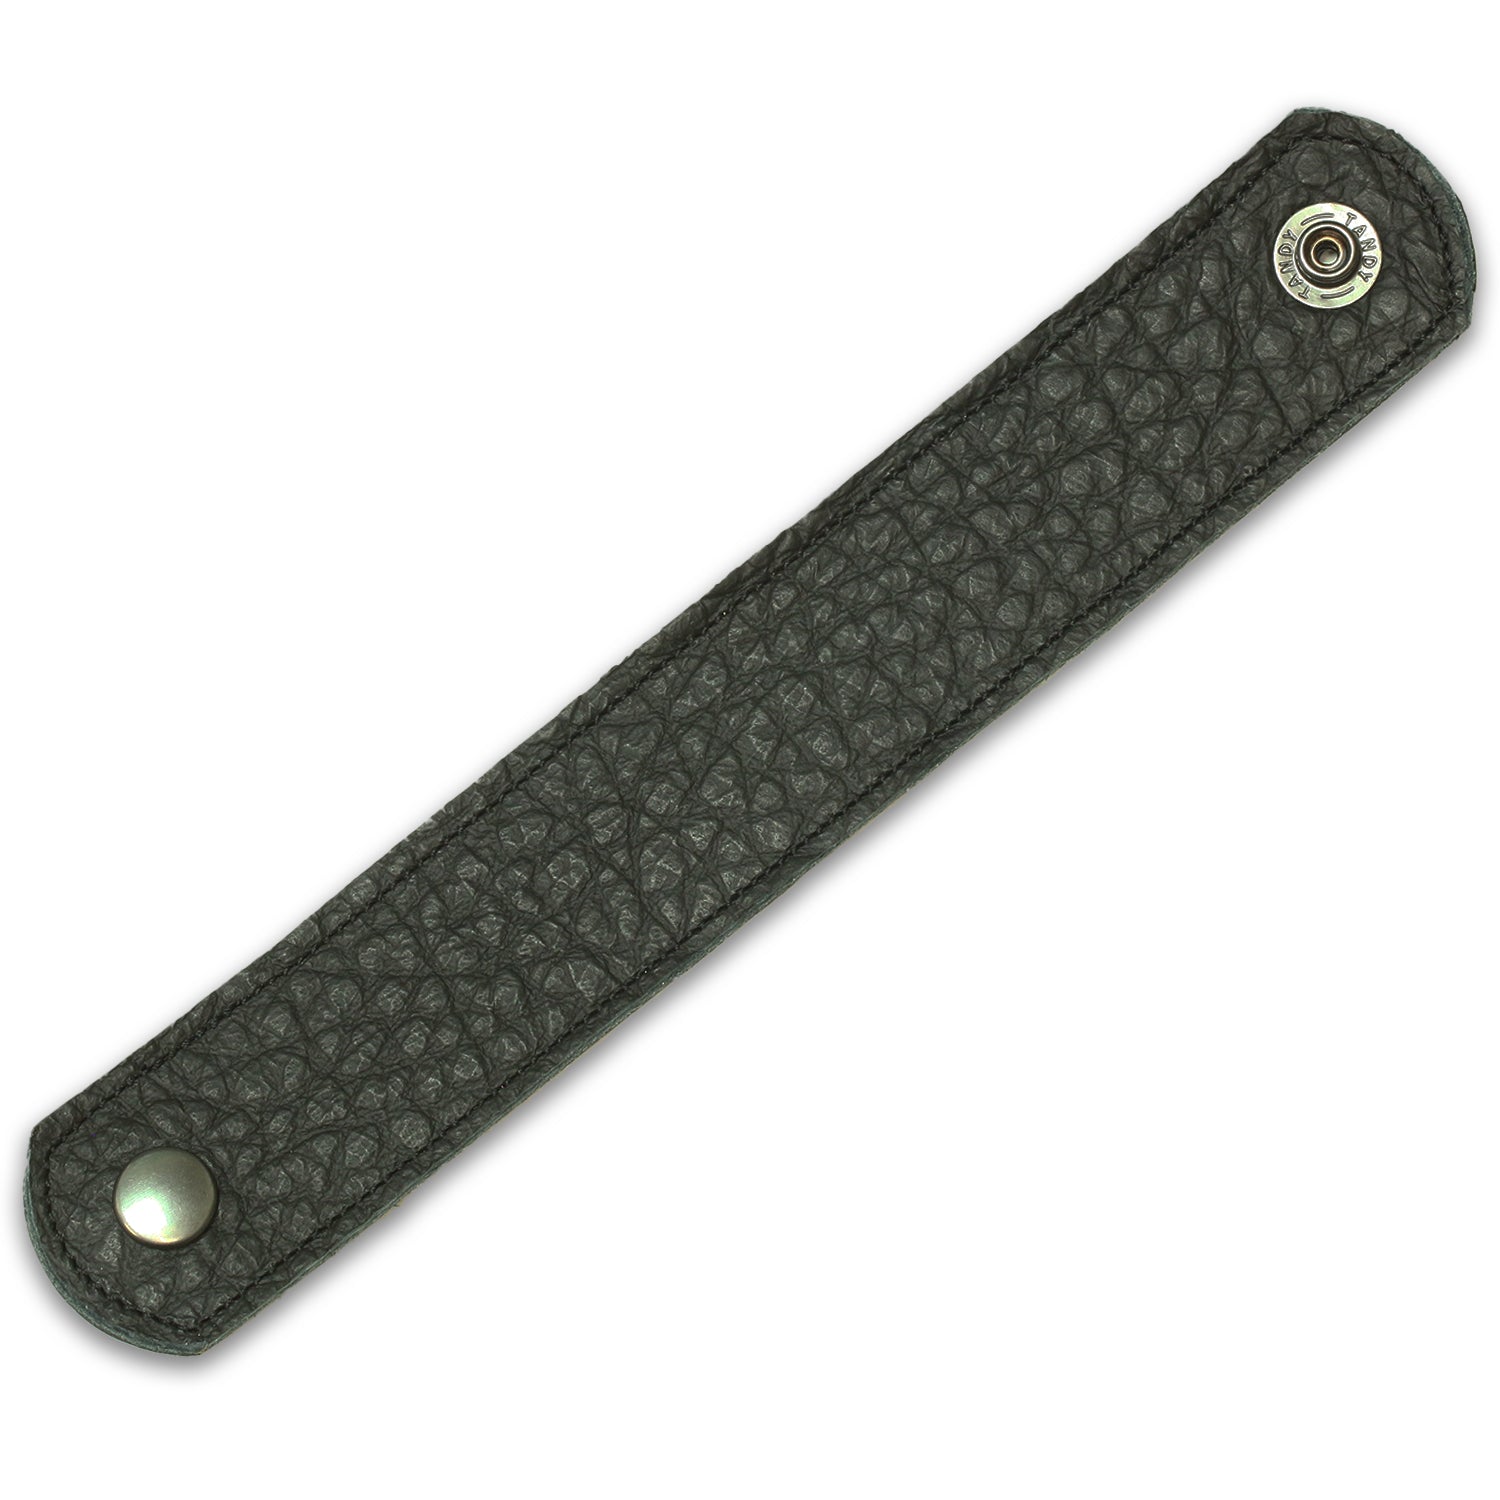 Black Nylon Adjustable String Bracelet with Decorative Slide Knot, Pack of 5